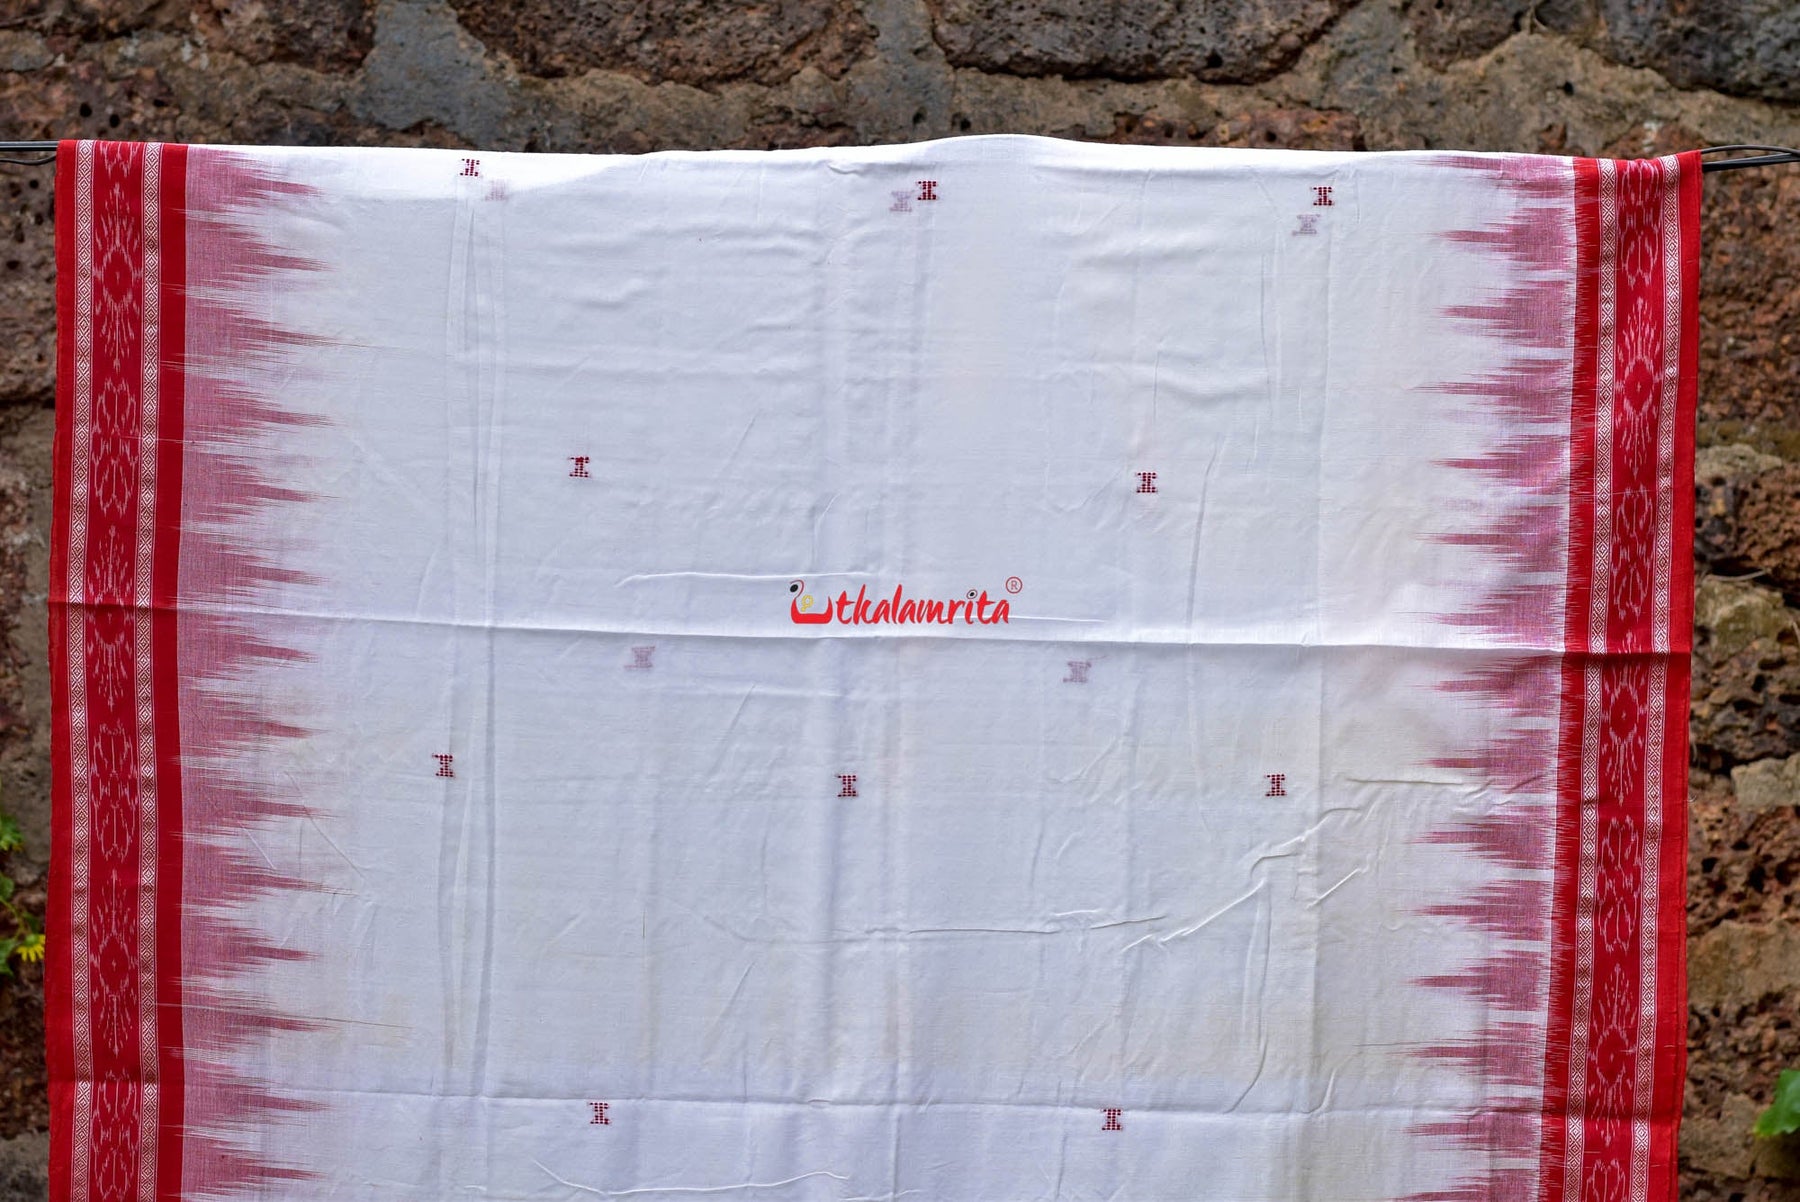 White Red Buti Kumbha Cotton Saree